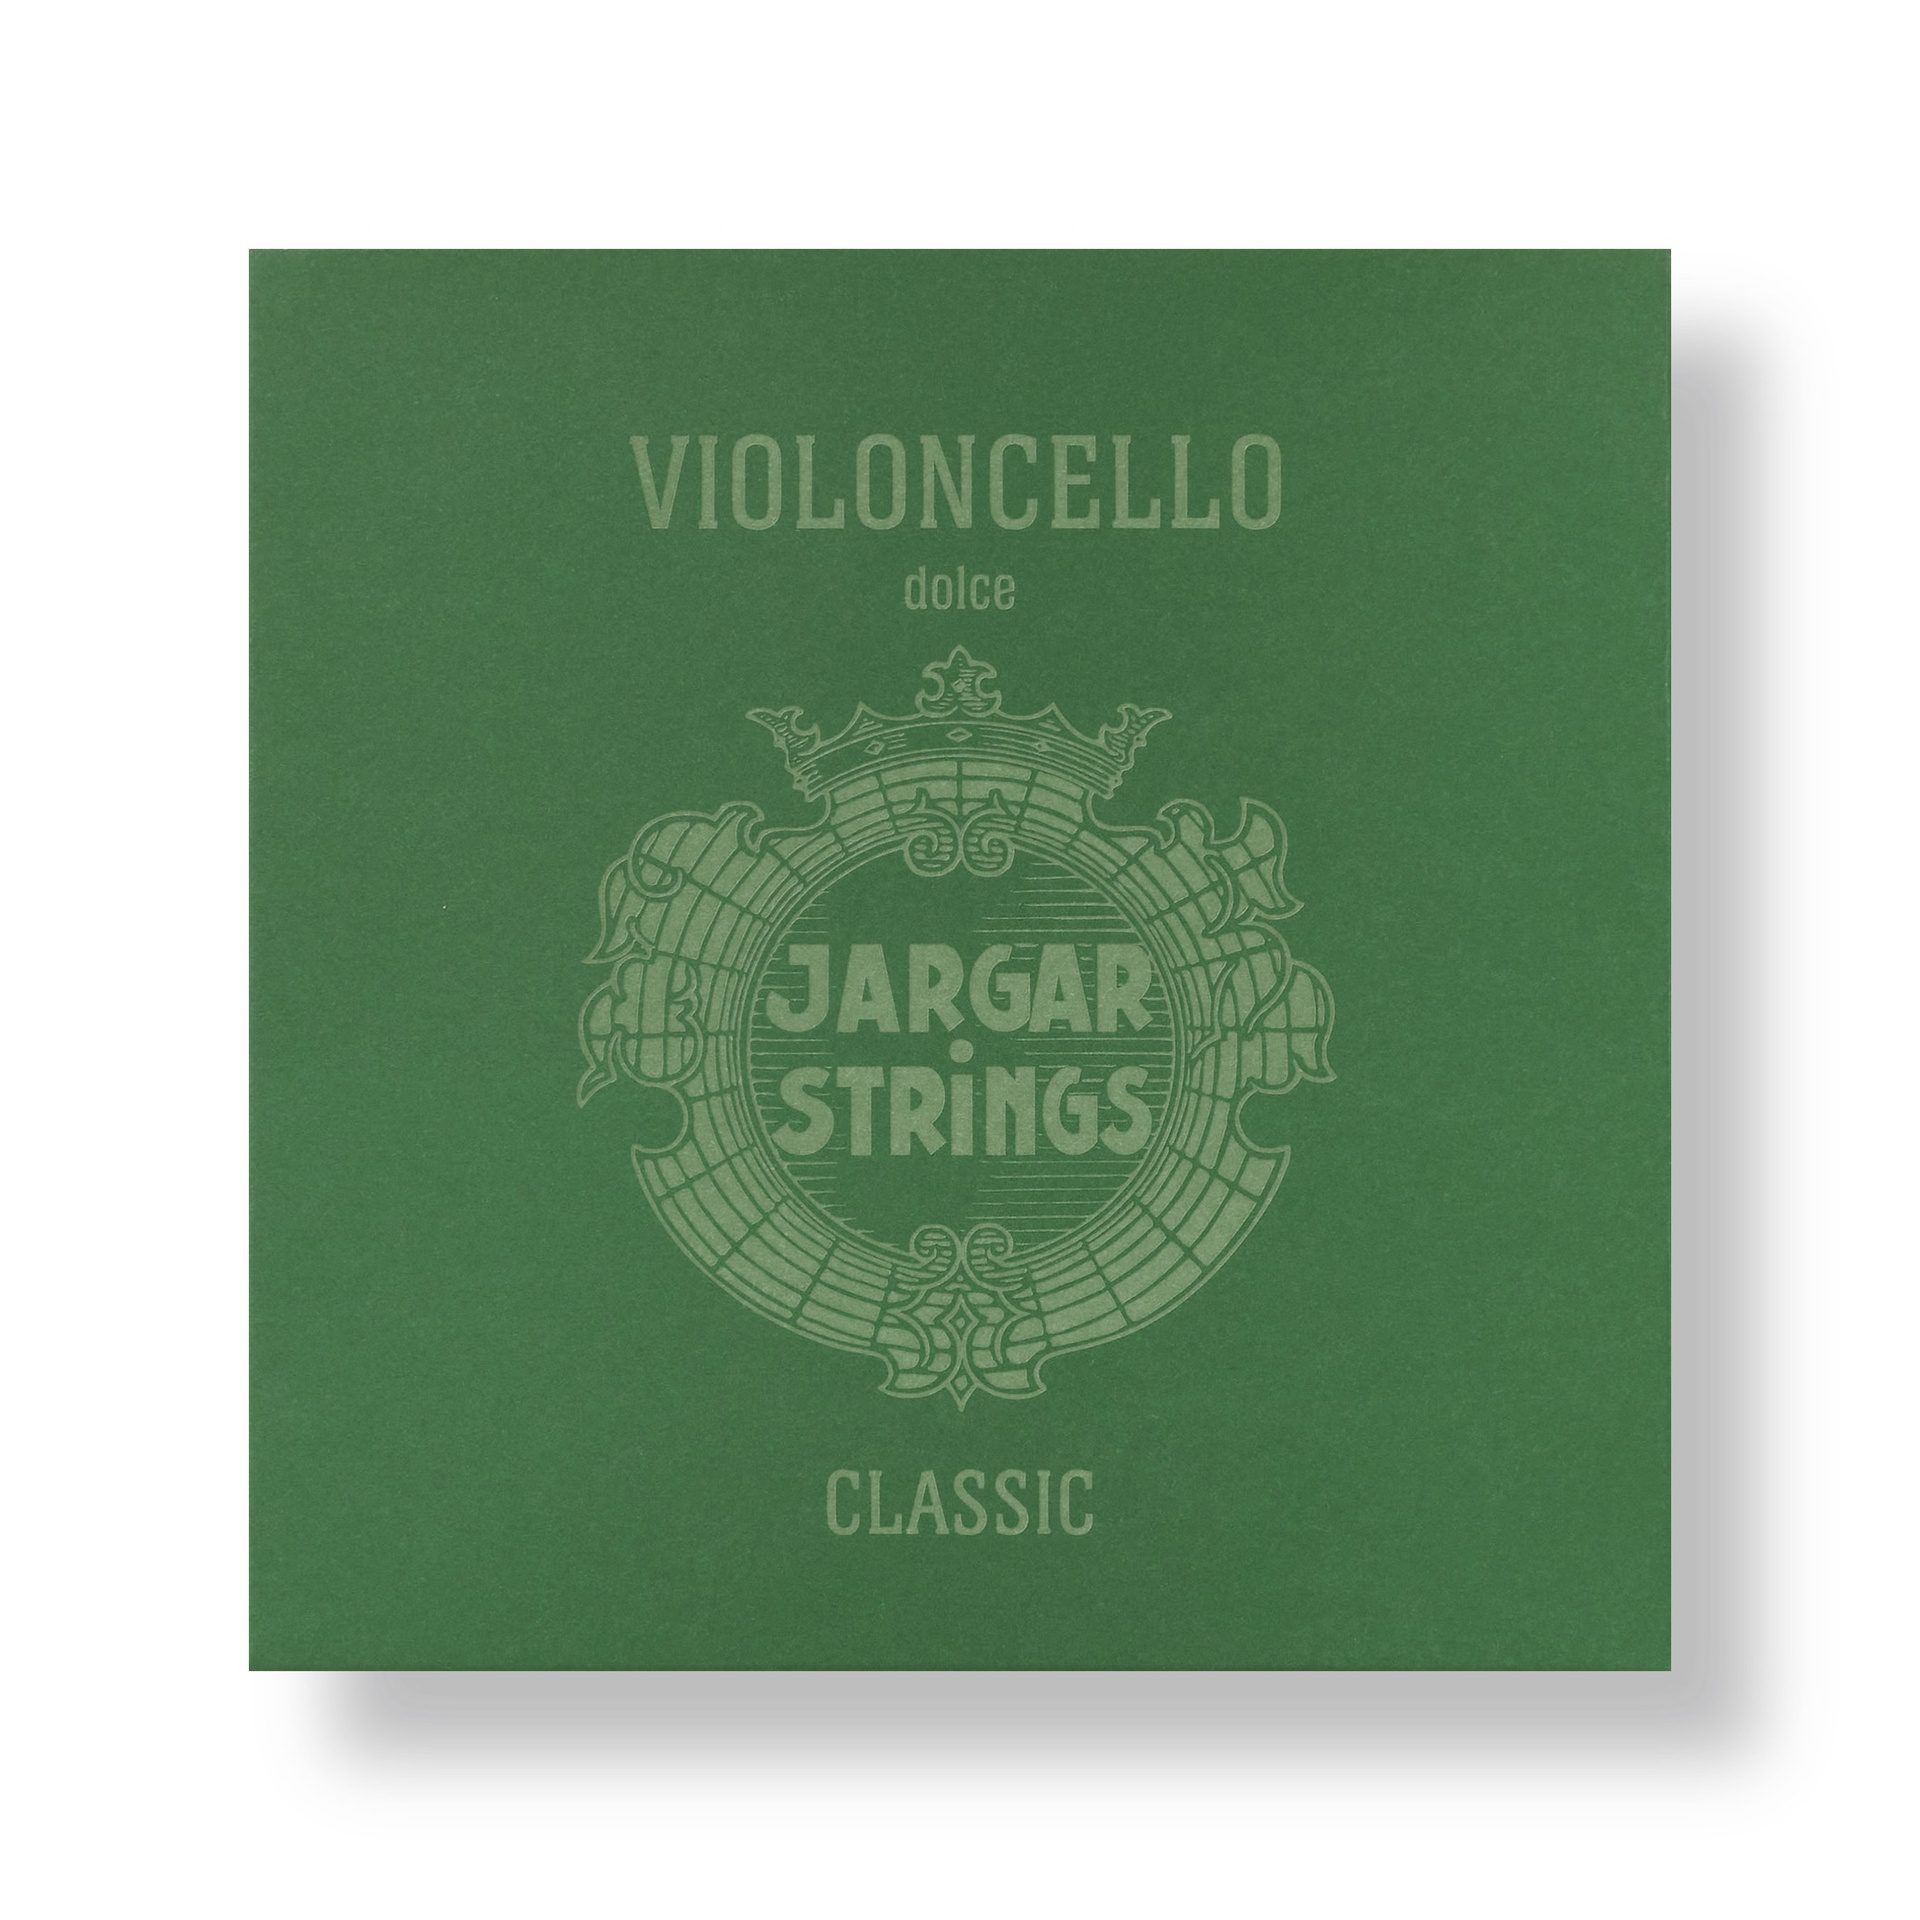  Bộ Dây đàn Violon Cello, Classic, Green, Set 